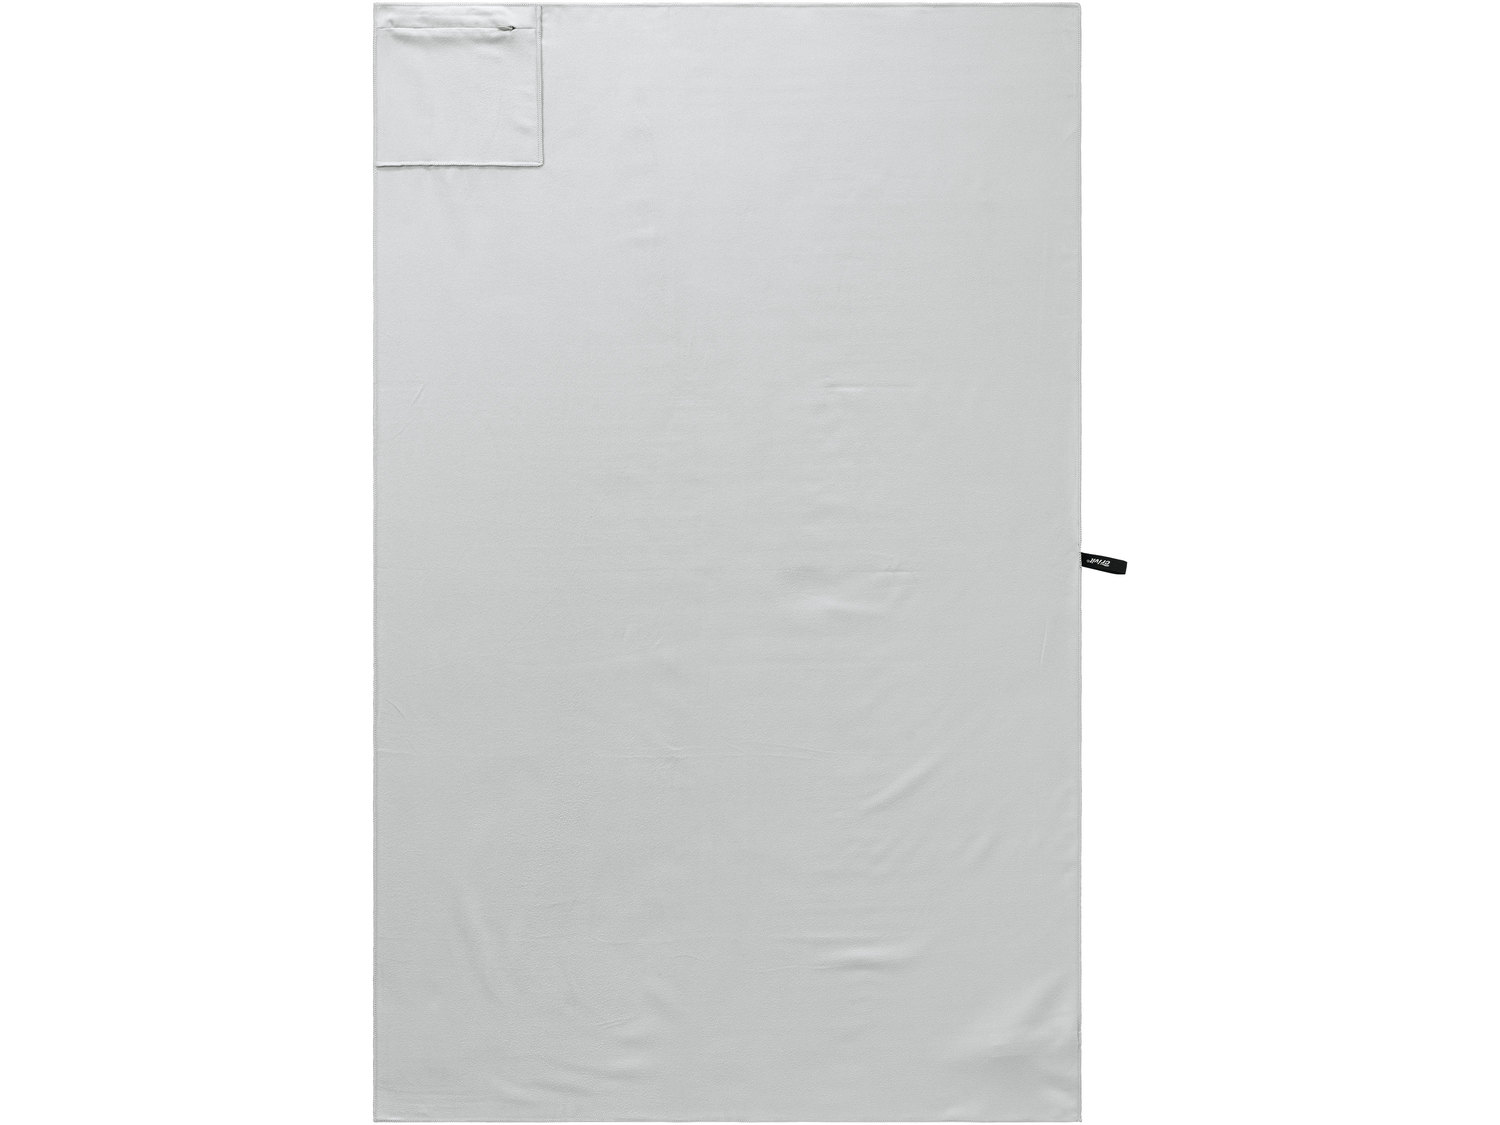 Ręcznik z mikrowłókna Crivit, cena 24,99 PLN 
- szybkoschnący
- lekki i kompaktowy ...